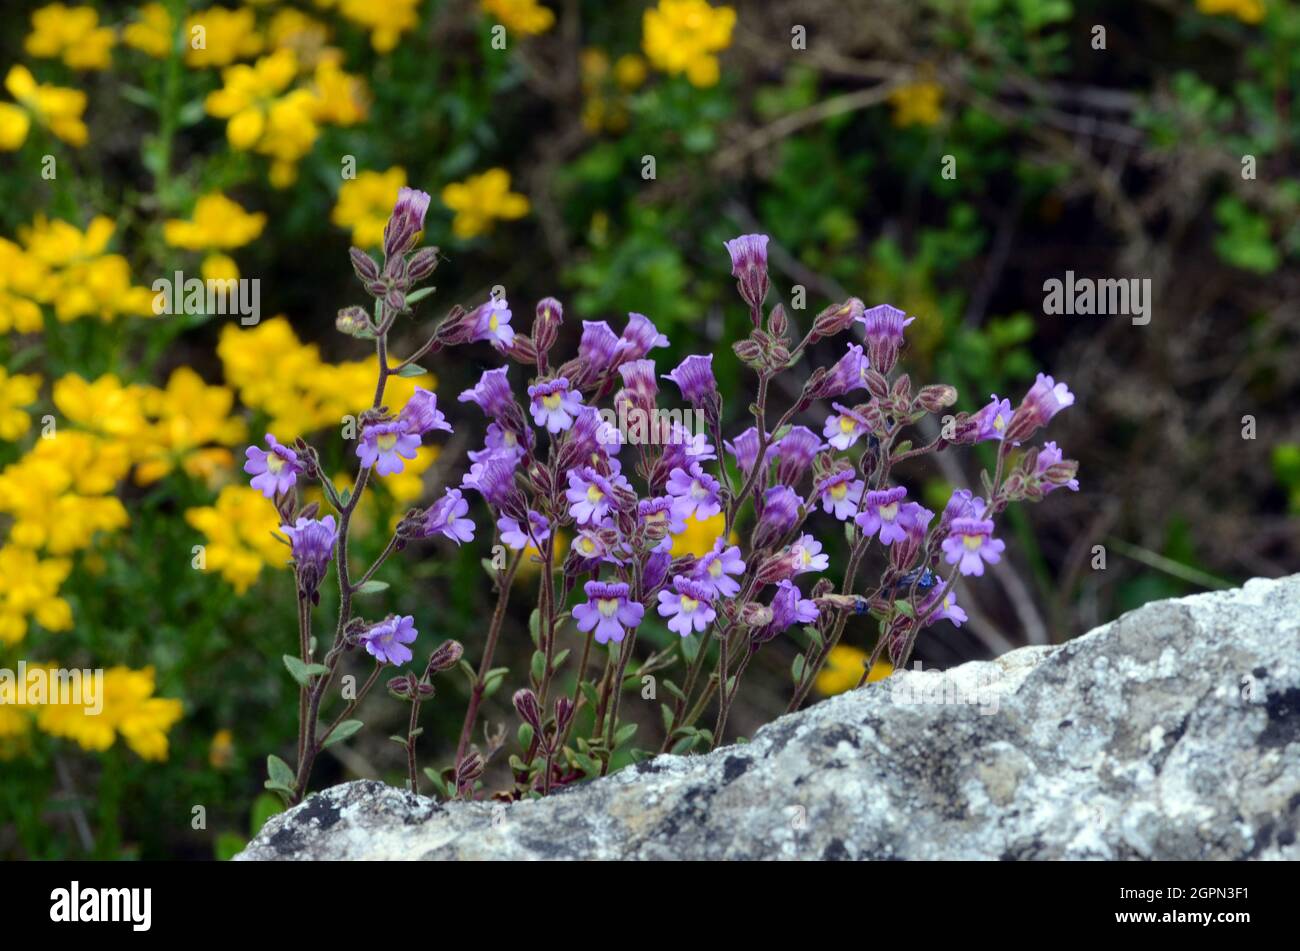 Chaenorhinum origanifolium flowers growing on rocks Stock Photo